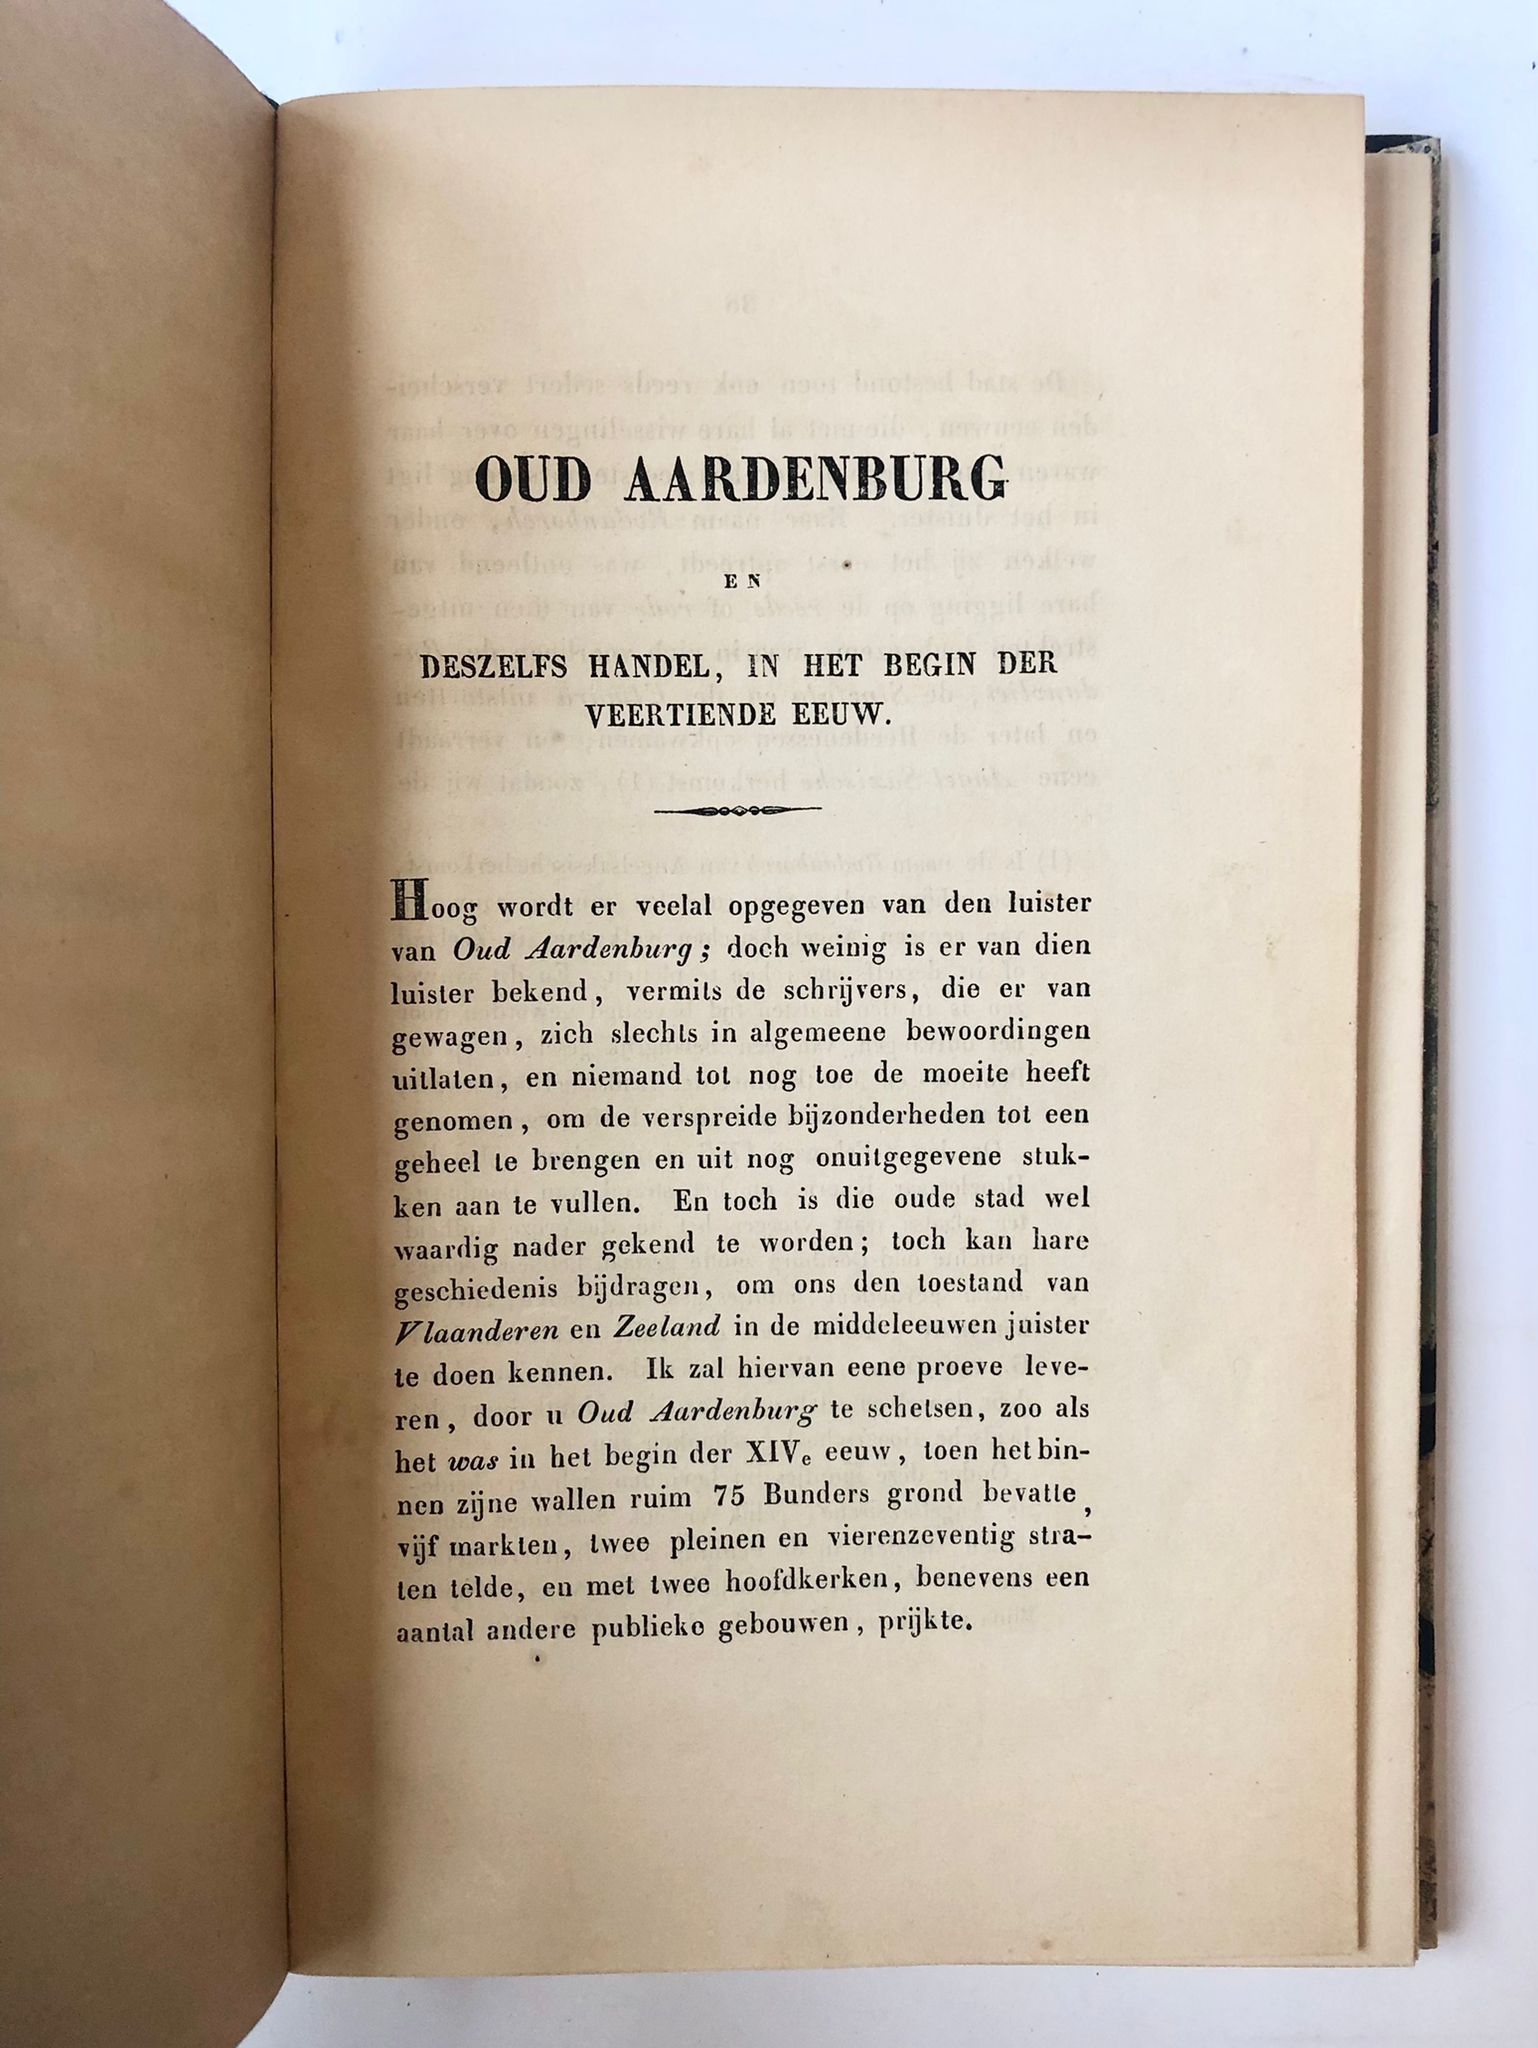 [Aardenburg, Zeeland] Oud Aardenburg en deszelfs handel, in het begin der XIVe eeuw door J. Ab Utrecht Dresselhuis, met plattegrond, van pagina 38 tot 102.